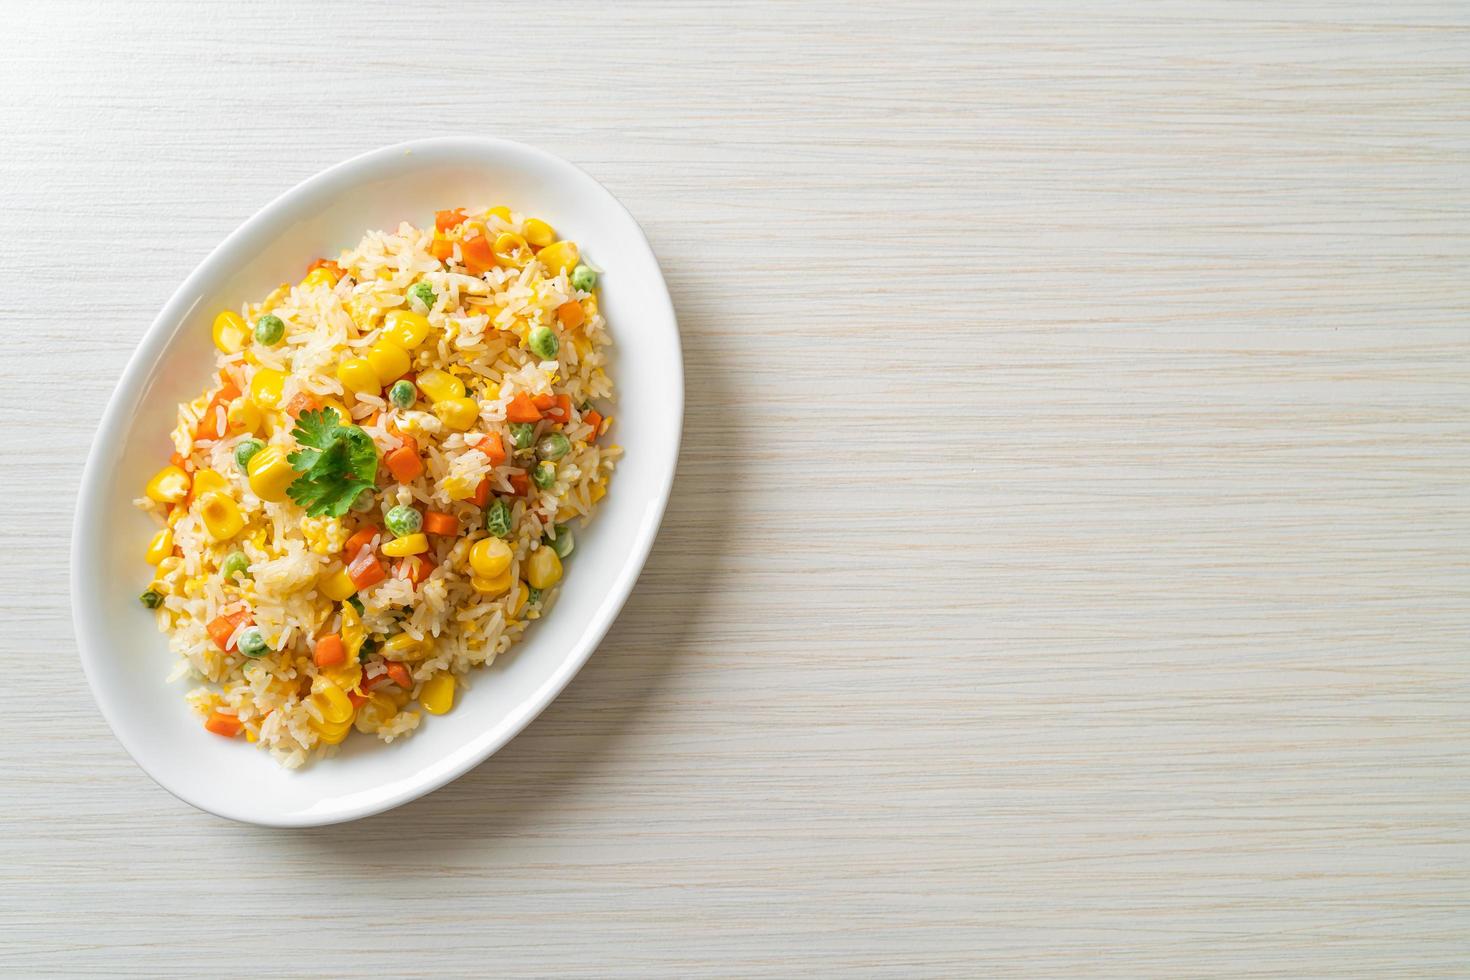 hemlagat stekt ris med blandade grönsaker av morot, gröna bönor, majs och ägg foto